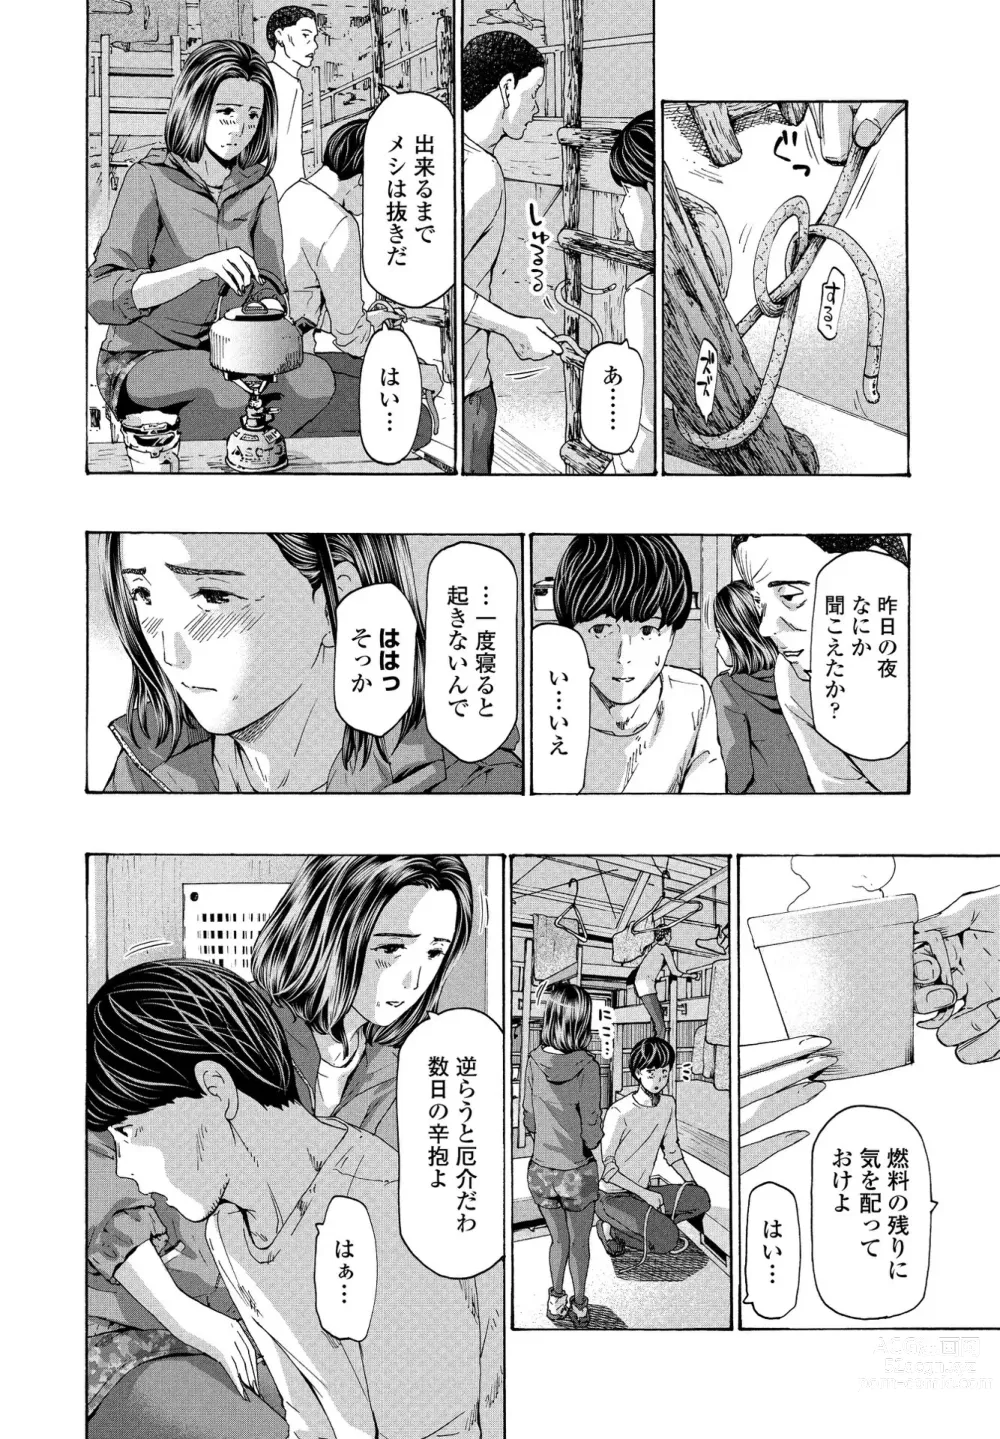 Page 16 of manga Hinangoya nite